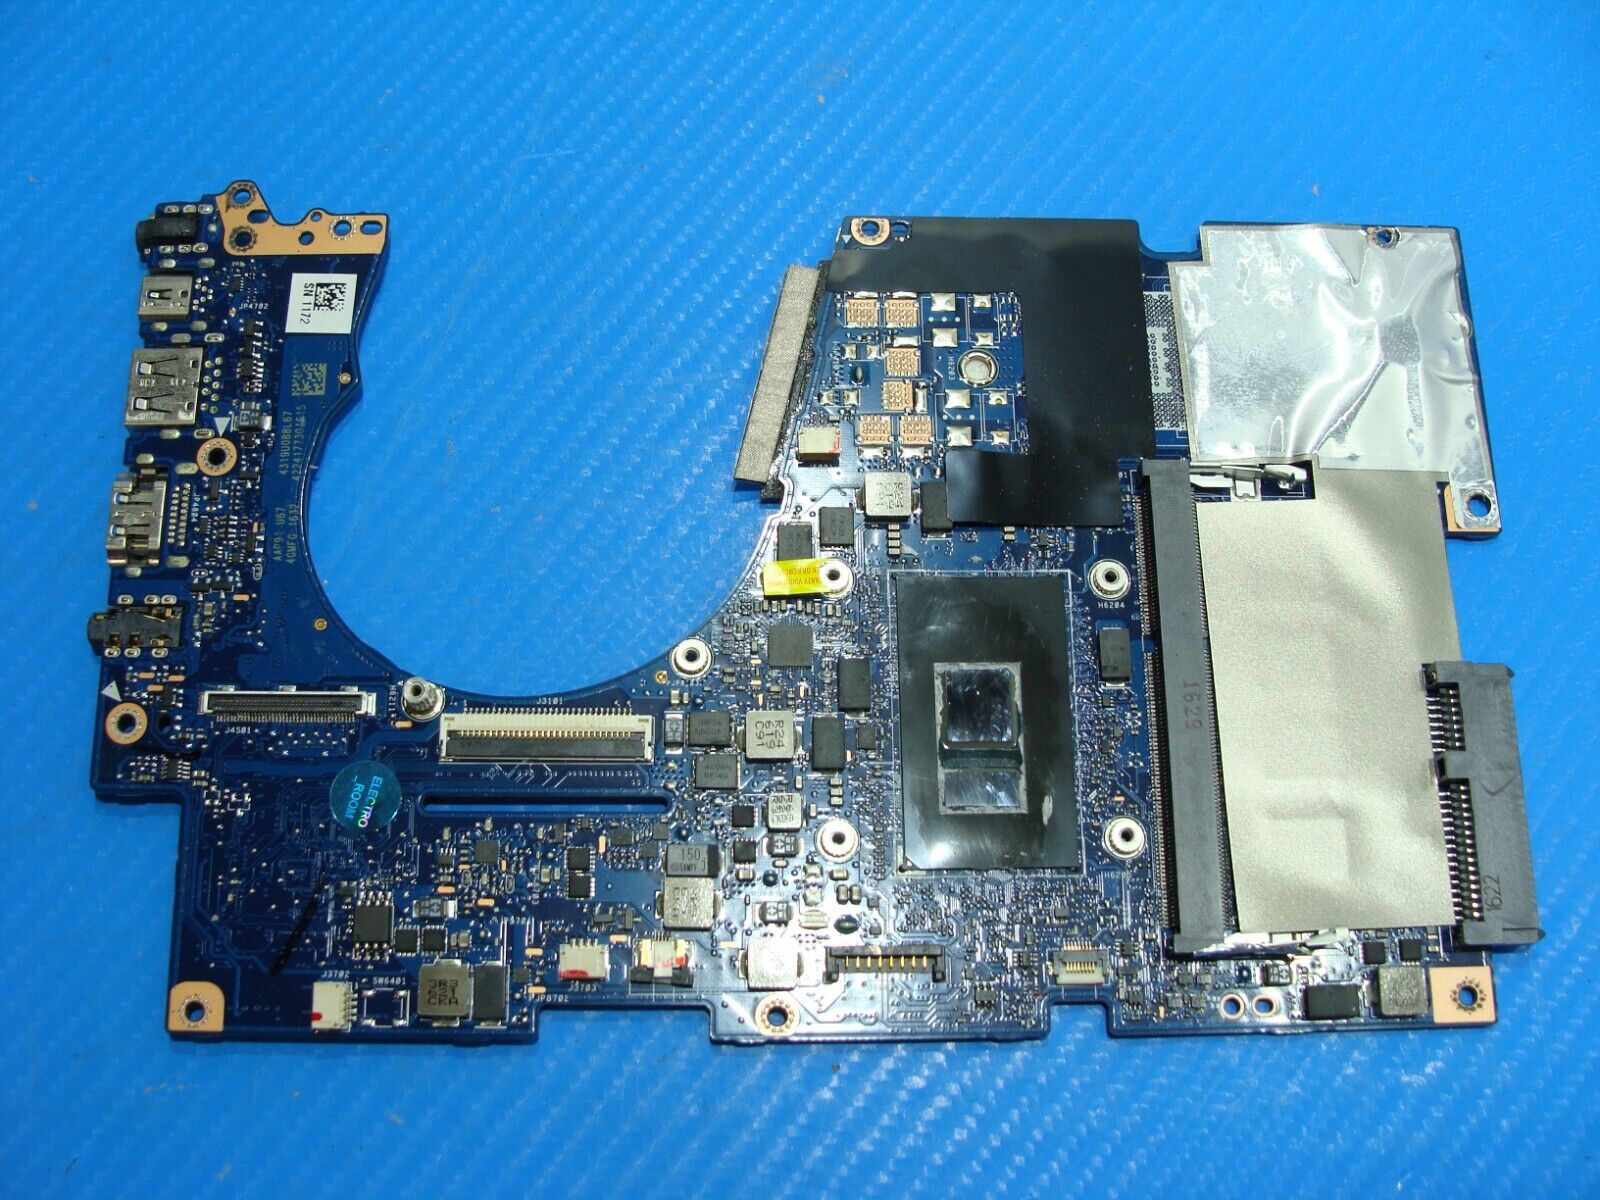 Asus ZenBook 13.3” UX303U Intel i5-6200u 2.3GHz 8GB Motherboard 60NB08U0-MB1720